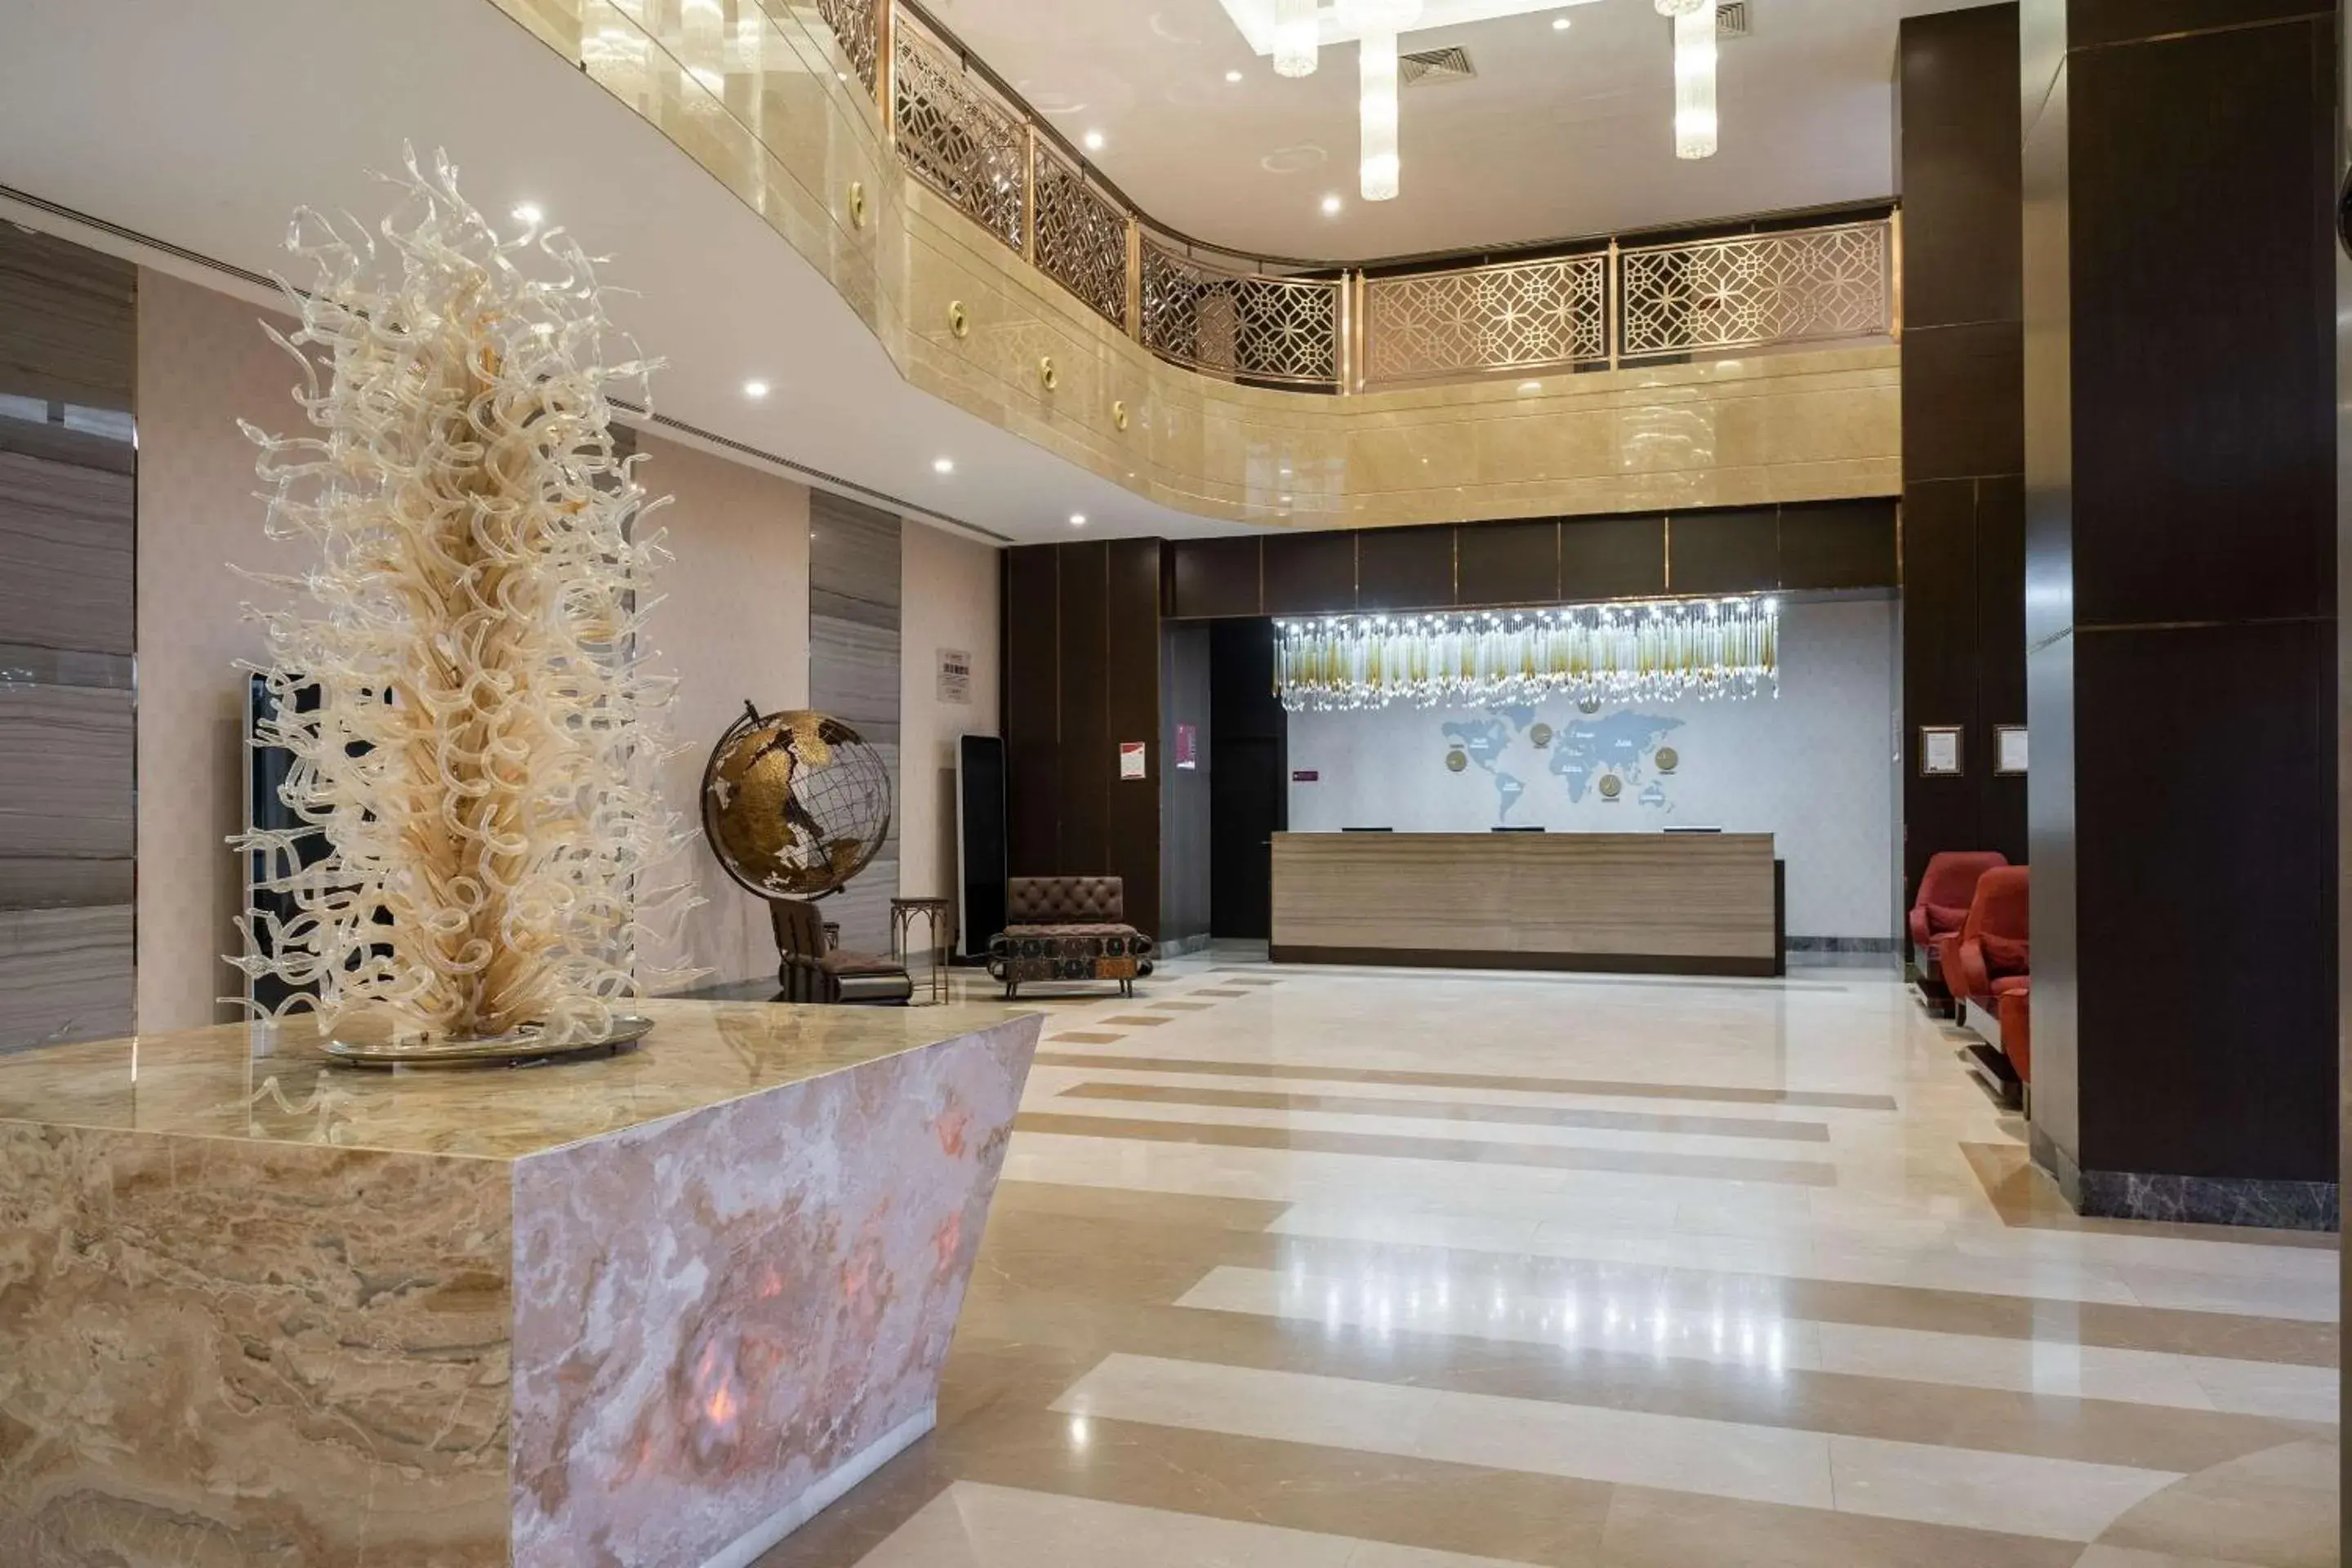 Lobby or reception, Lobby/Reception in Clarion Hotel Istanbul Mahmutbey